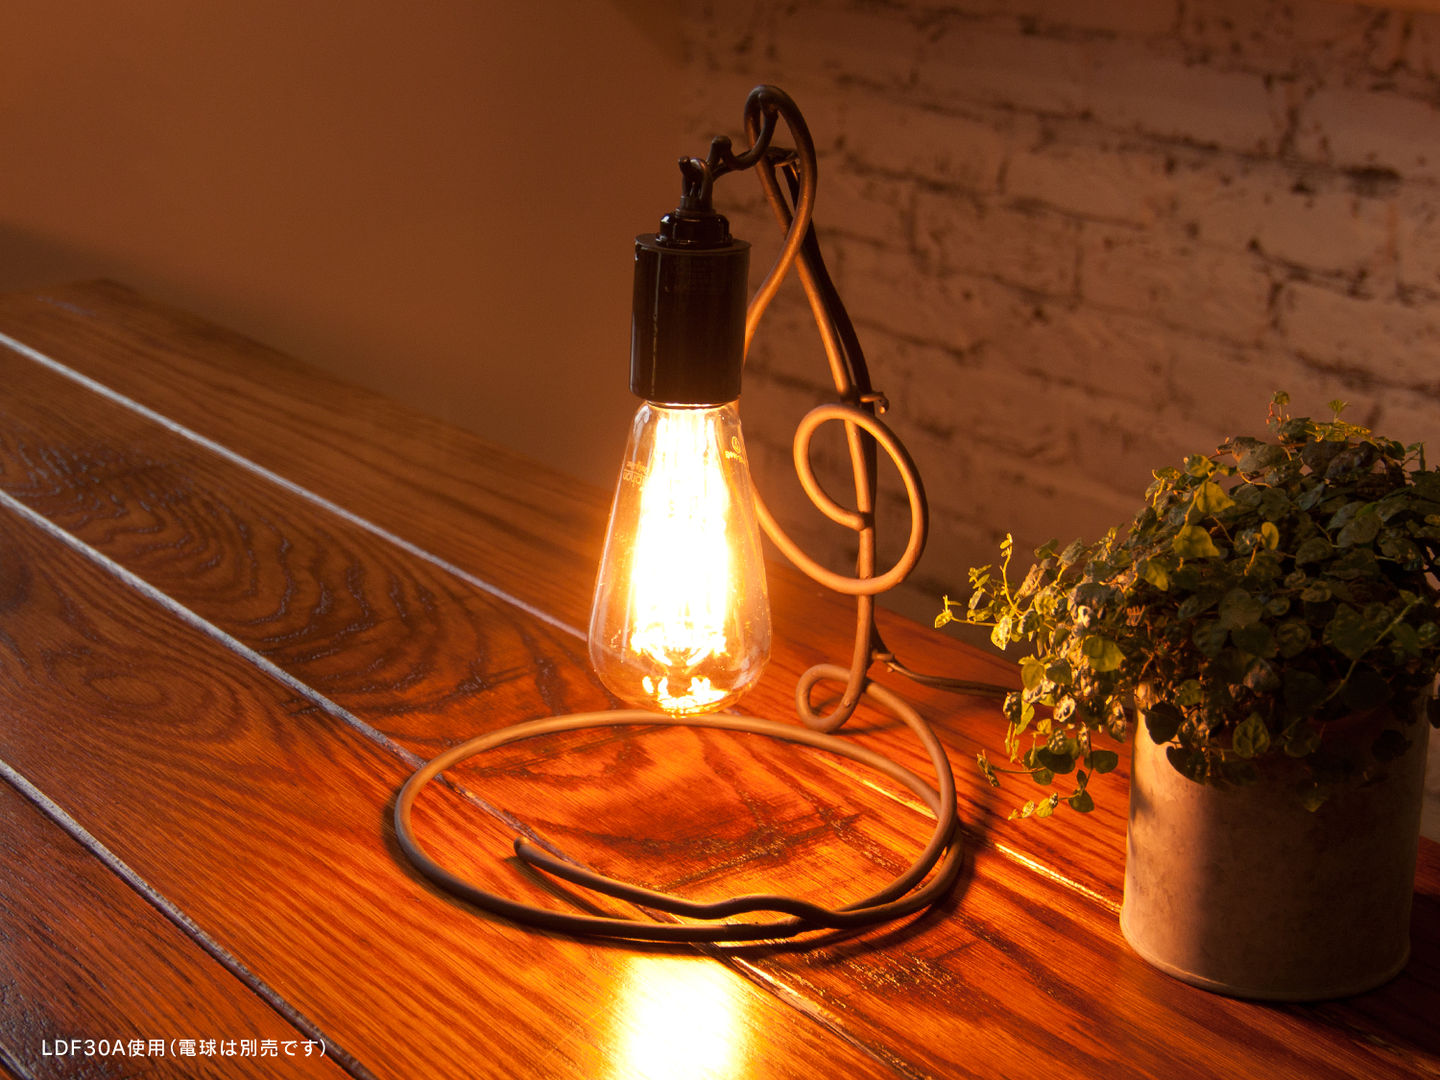 アイアンランプシェード「シルシェード」 Handmade Iron Lamp Shade, Only One Only One غرفة نوم حديد إضاءة